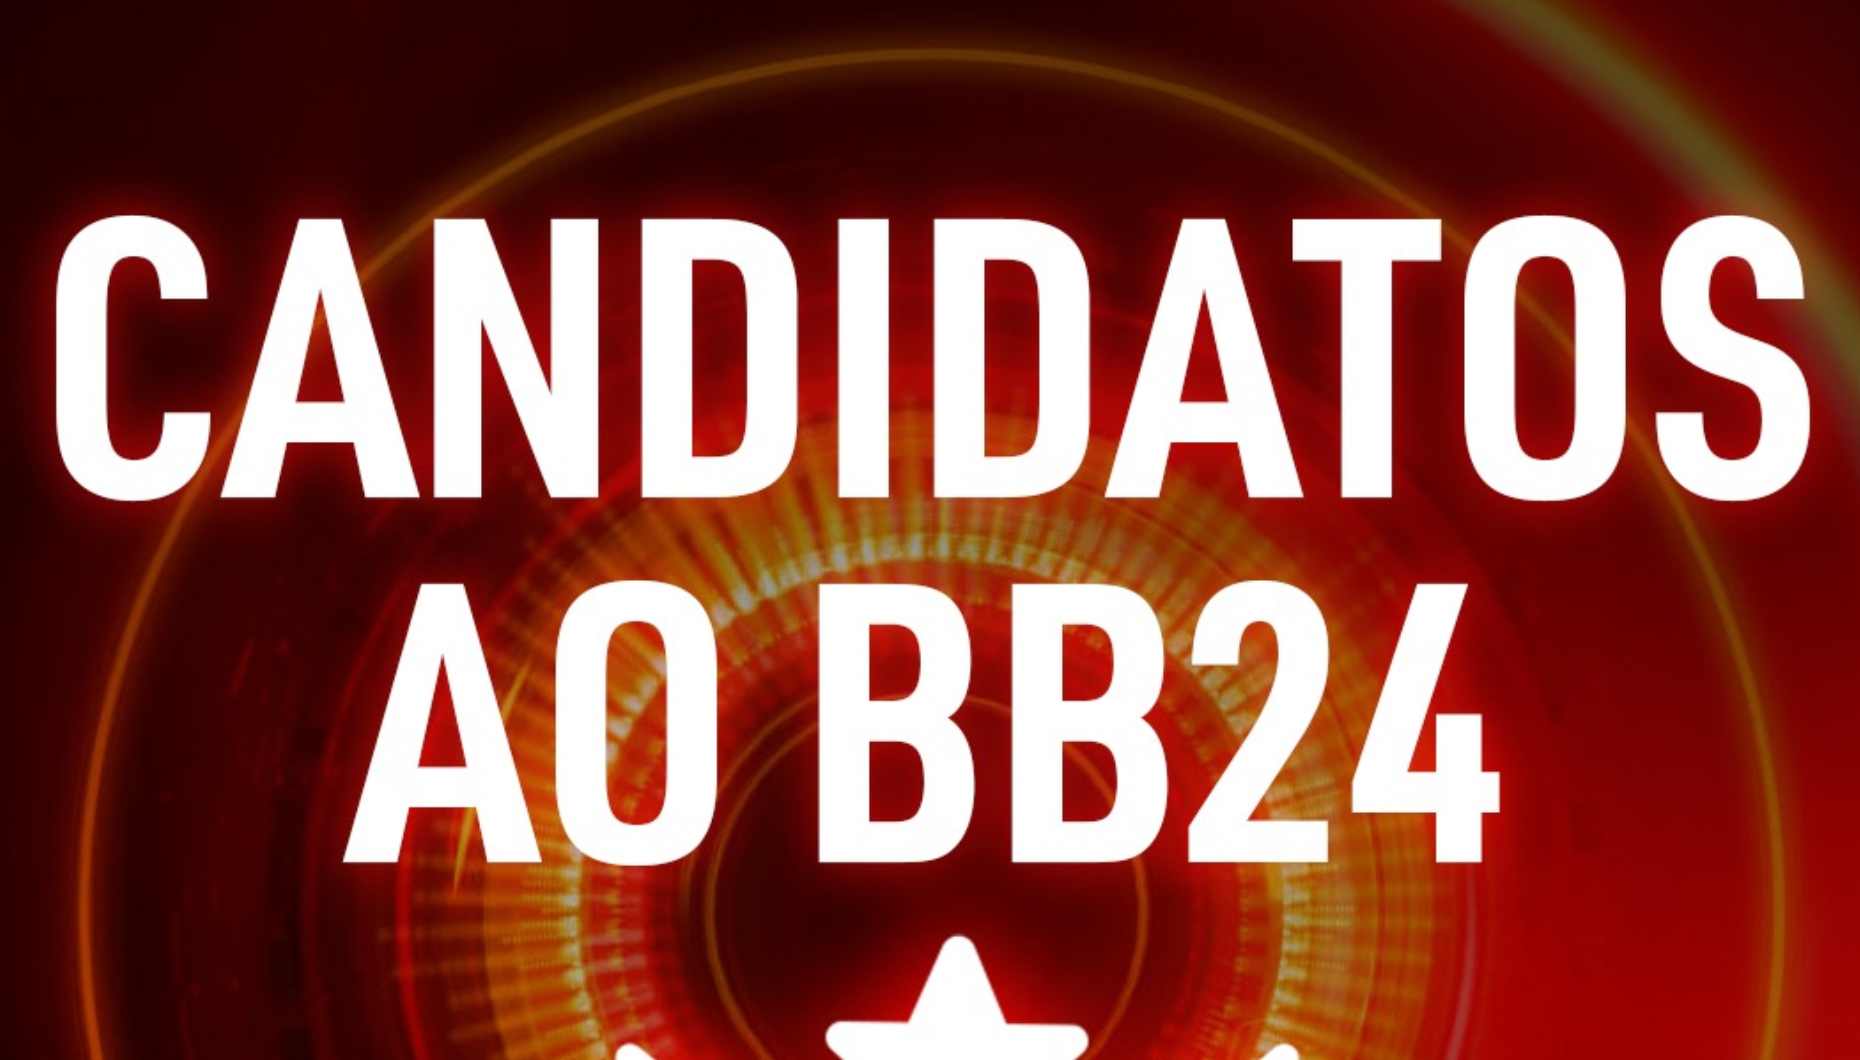 Fica a conhecer os candidatos a concorrentes do Big Brother 24